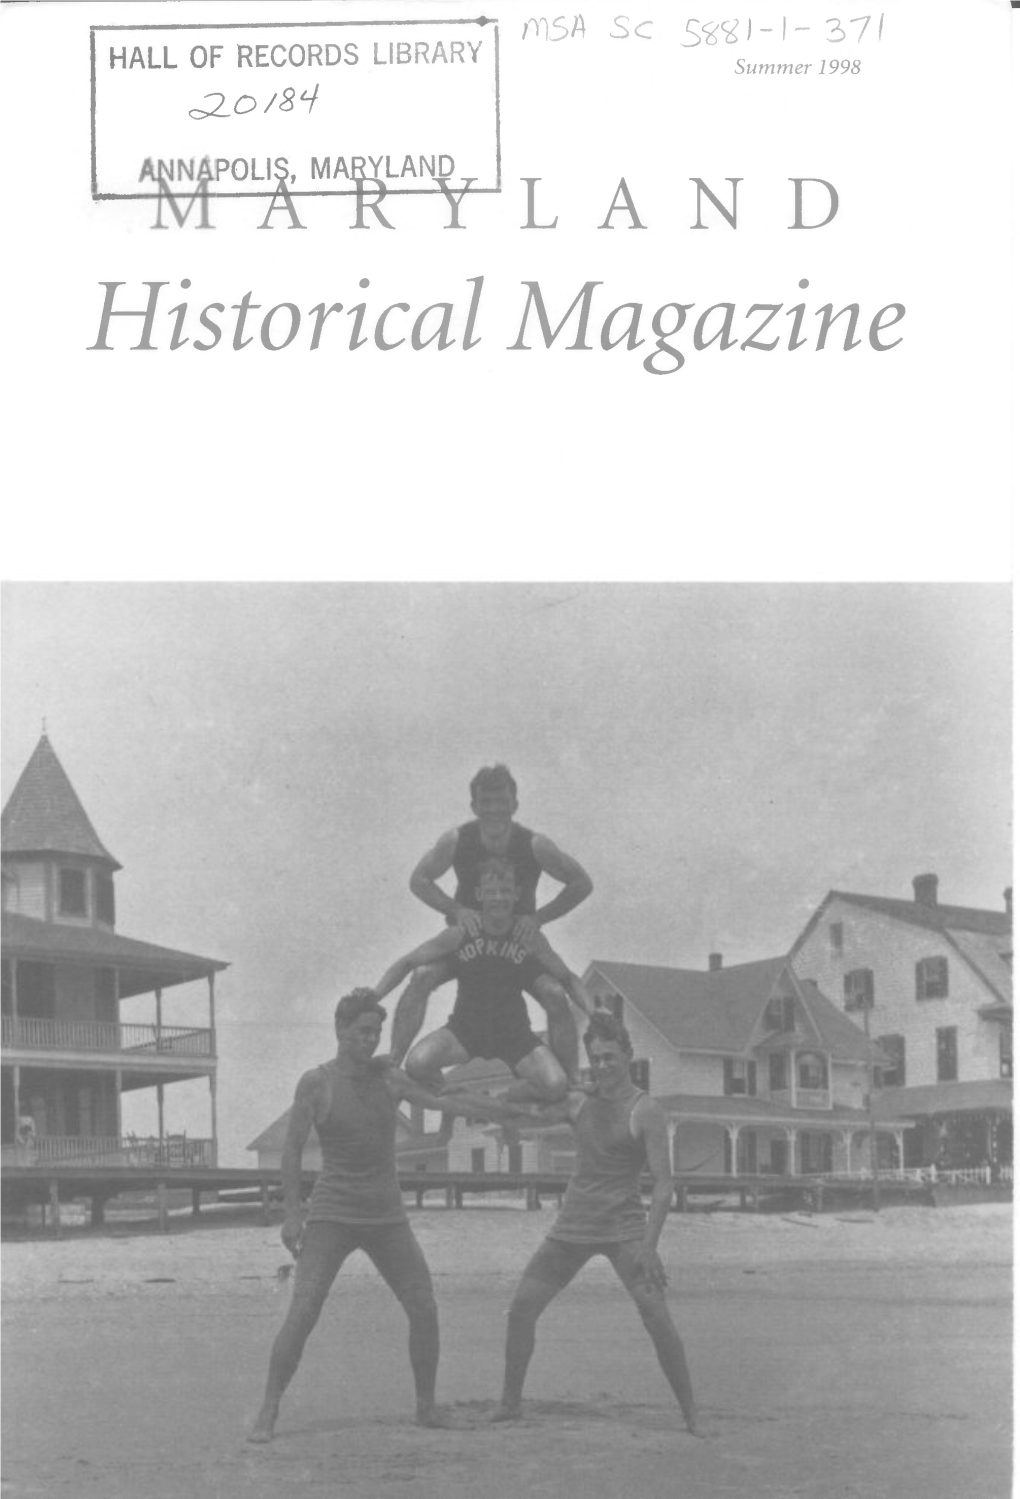 Maryland Historical Magazine, 1998, Volume 93, Issue No. 2